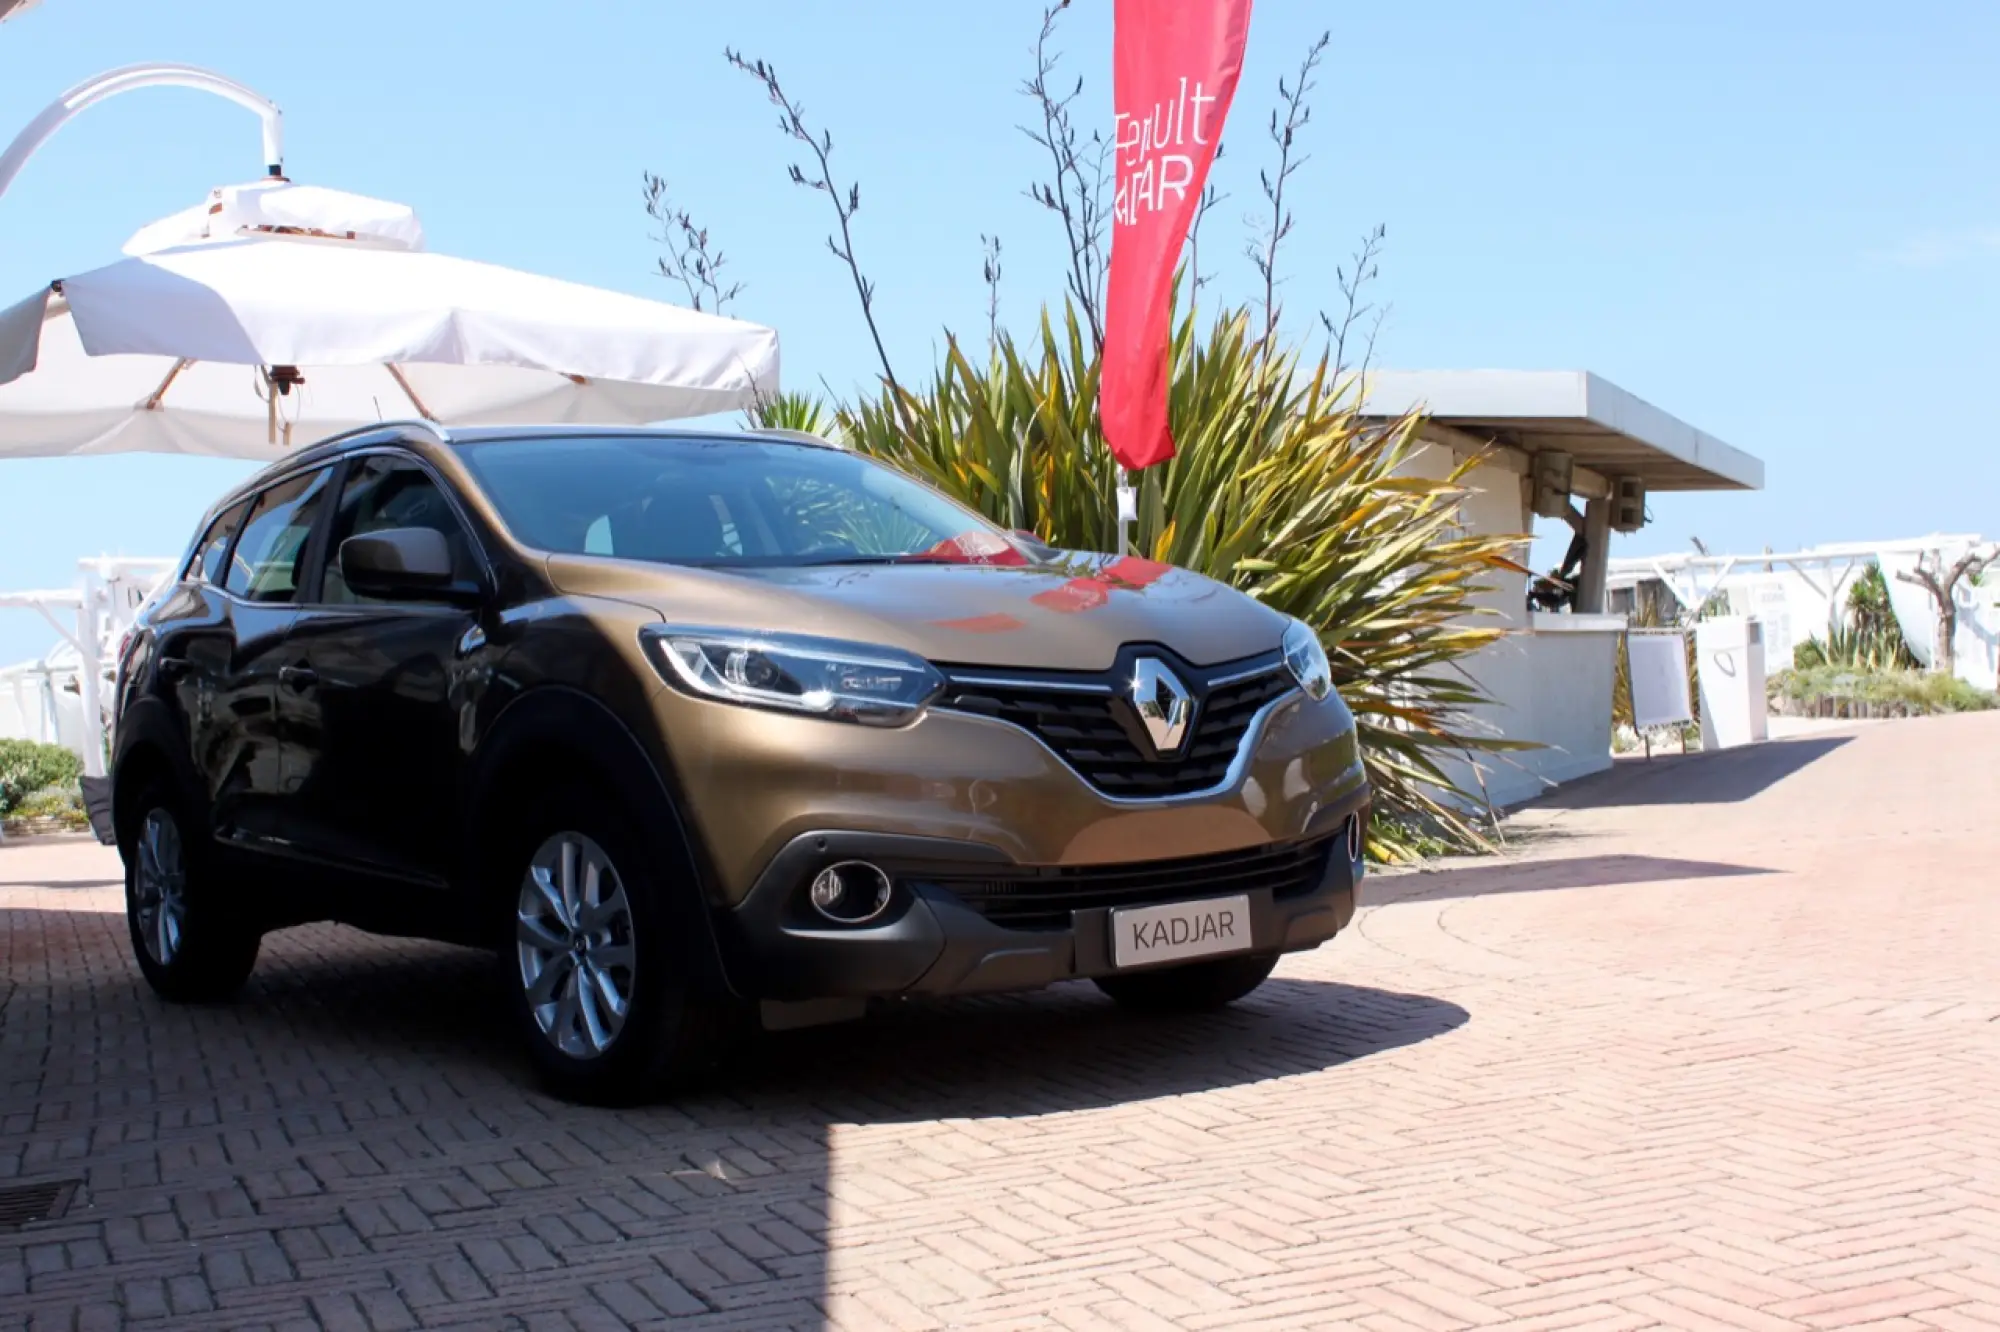 Renault Kadjar - Evento Crossover Summer Tour Renault a Ostia 17-07-2015 - 1